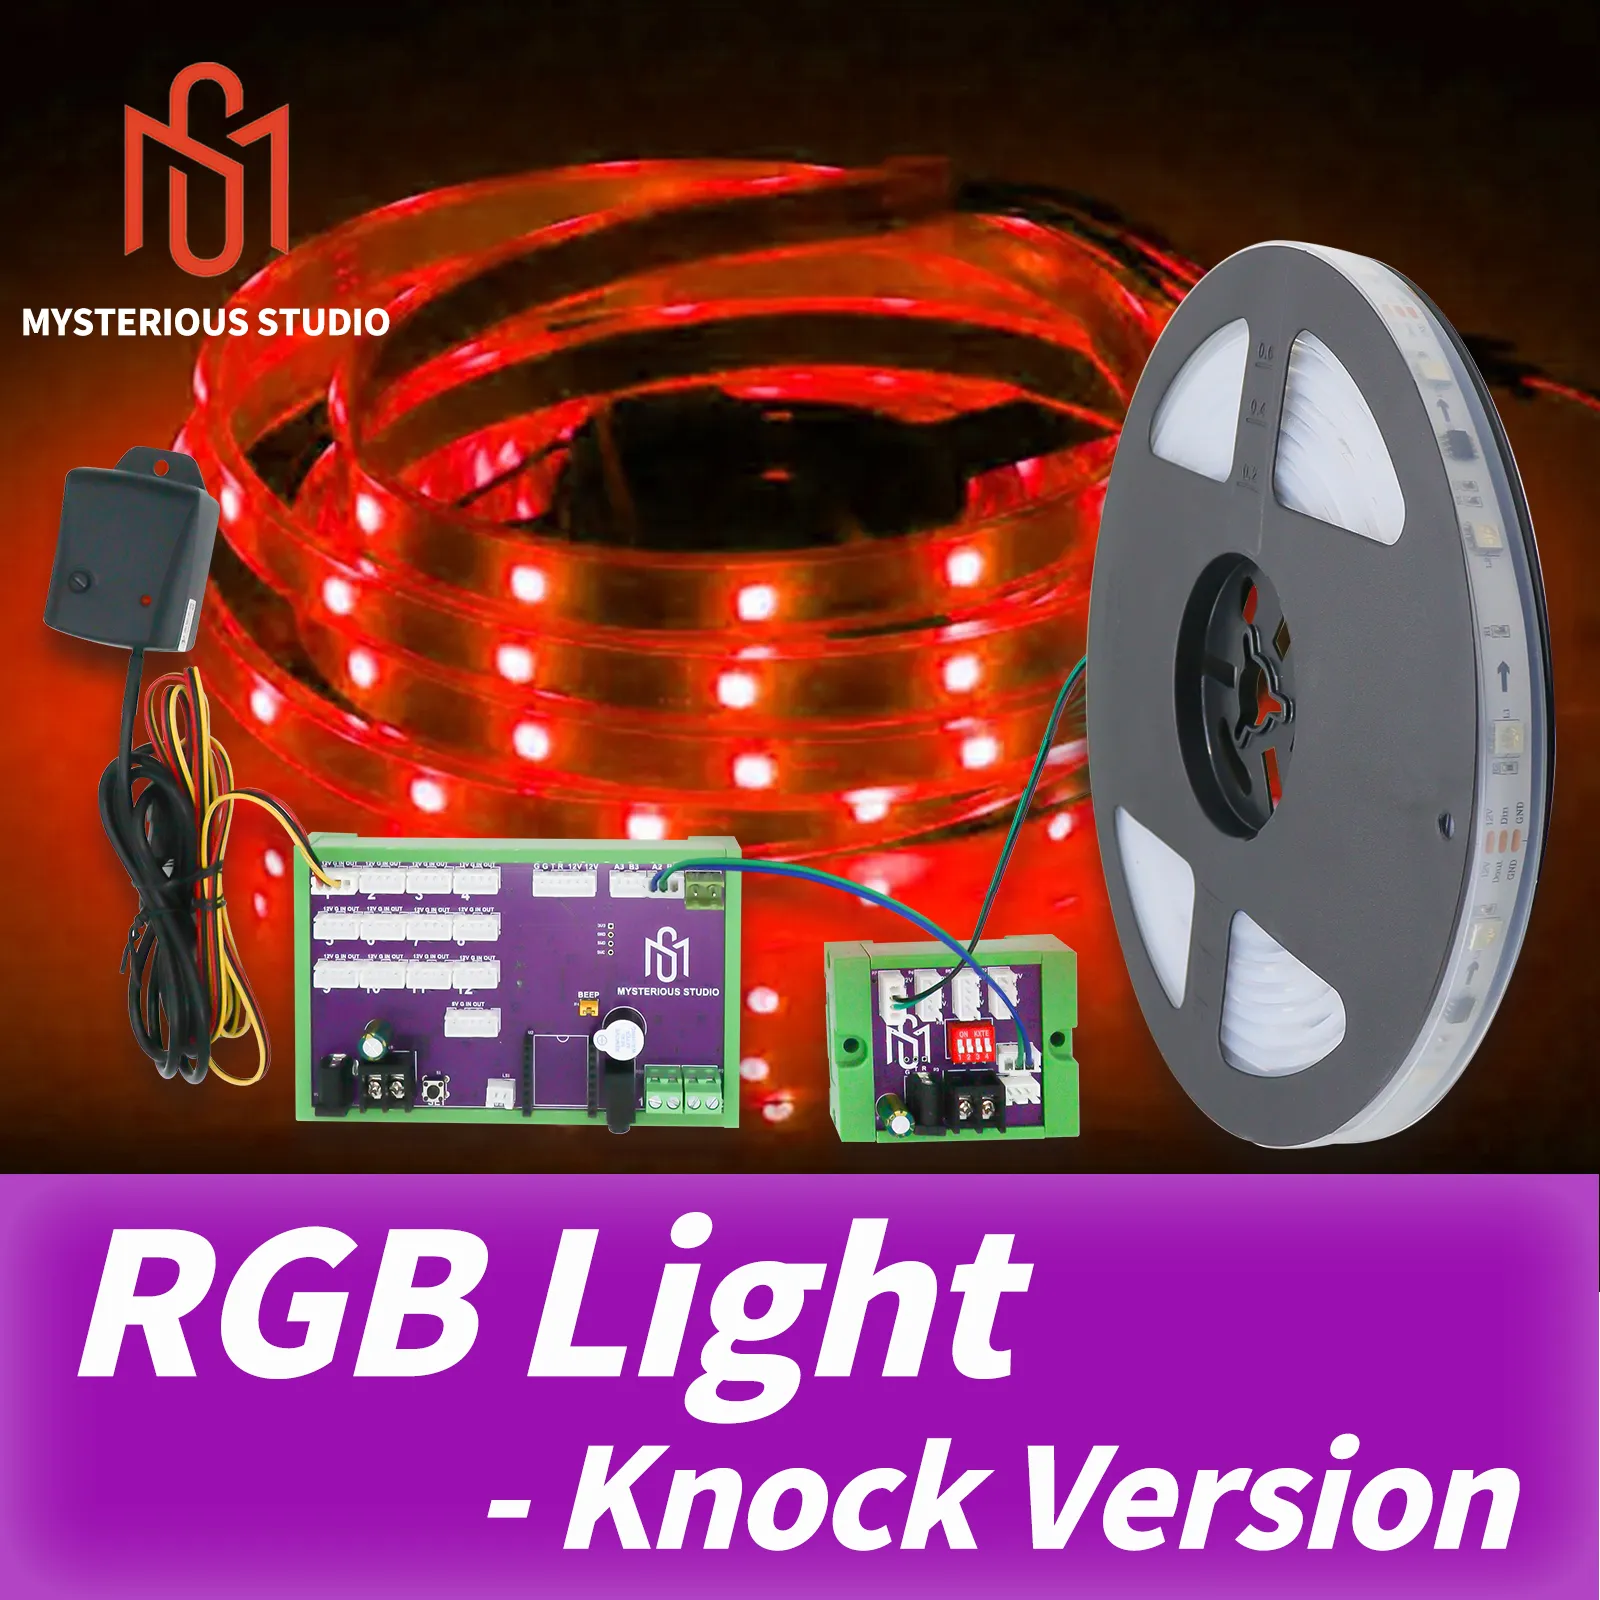 Mysterious Studio Escape Room Knocking Belt Prop Vibration Sensor för att tända RGB LED -remsan för att låsa upp knockversion